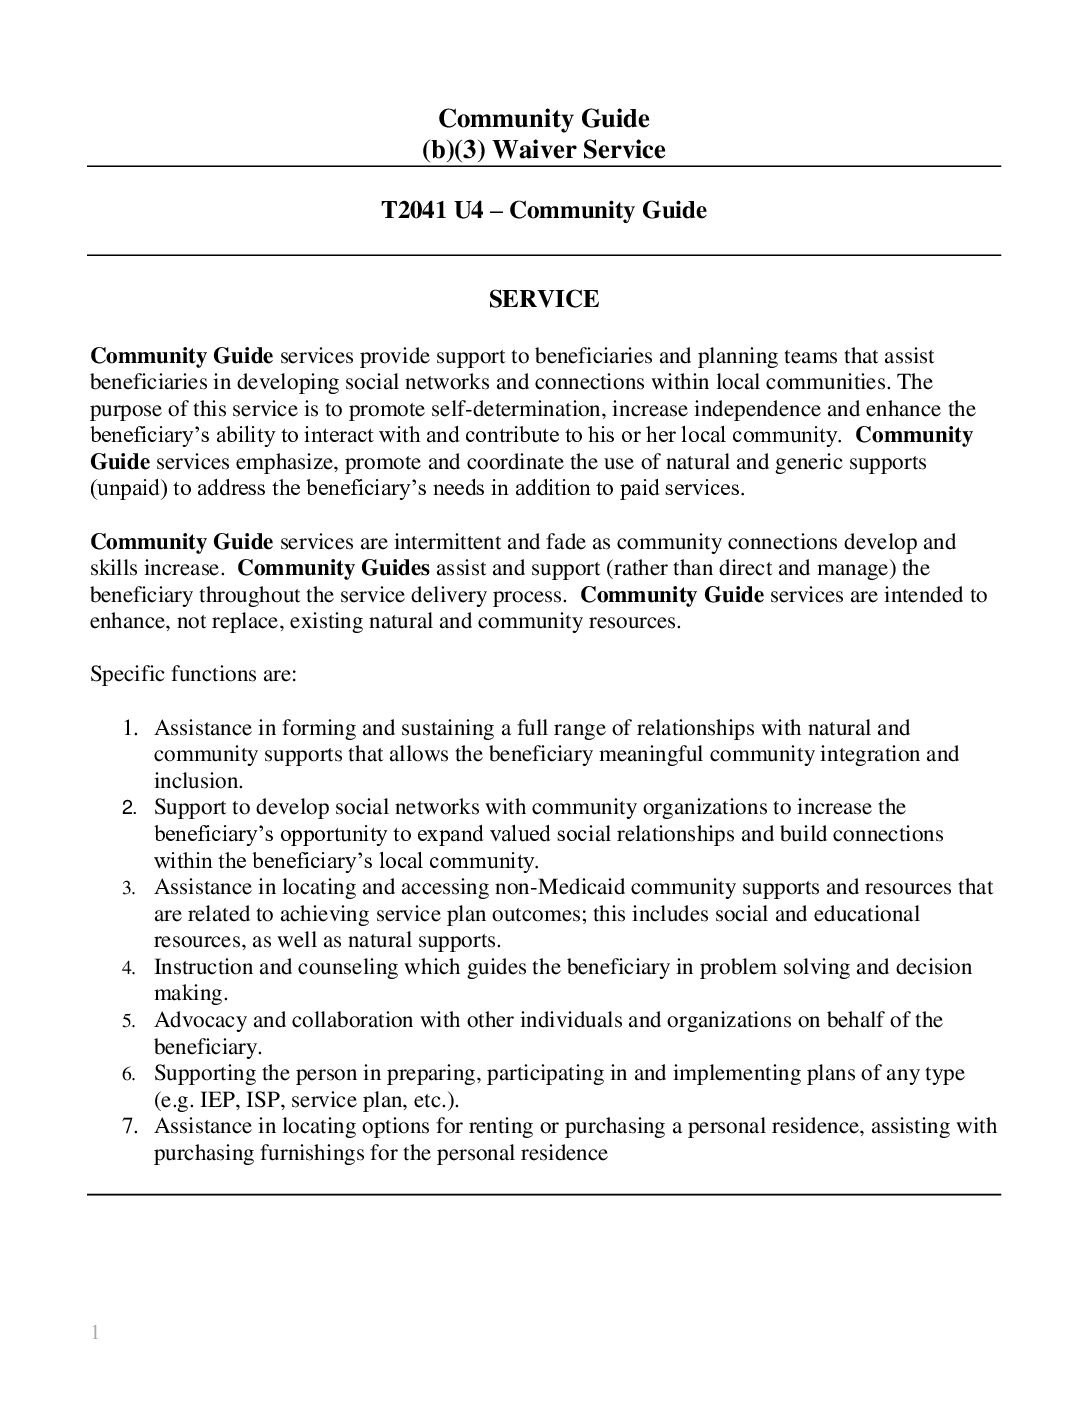 B3 AH Community Guide T2041 U4